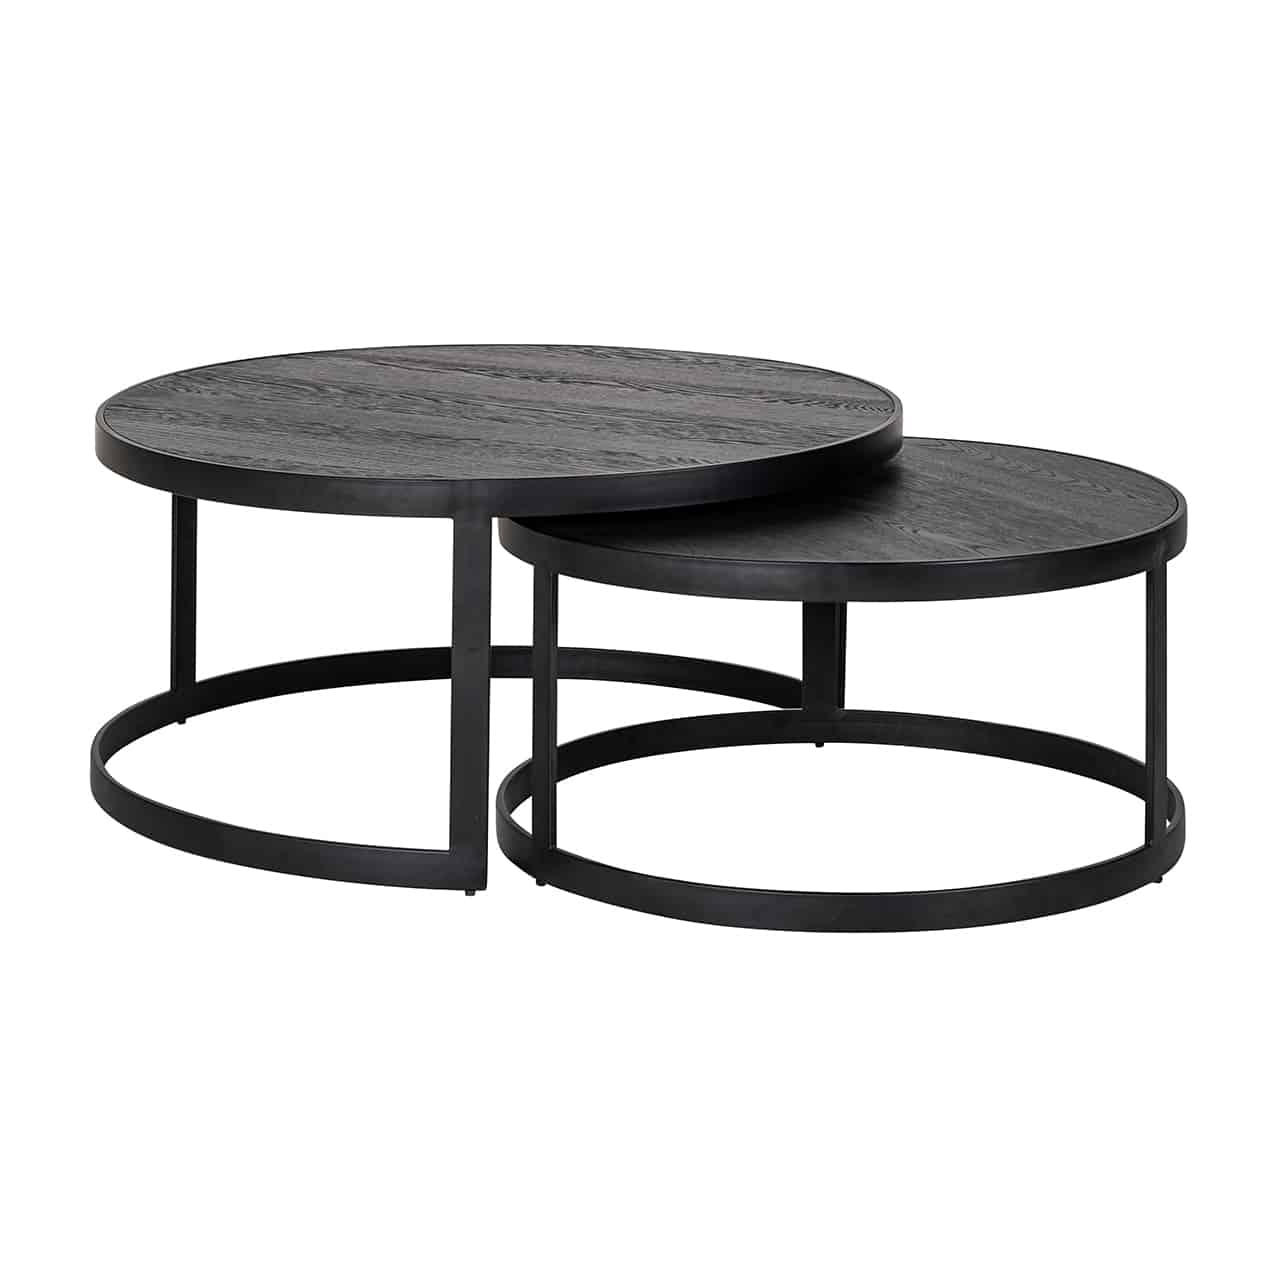 Couchtisch 2er Set; zwei verschieden hohe runde Tische mit einem Gestell aus breiten, schwarzem Metallstreben und einer kompakten, schwarzen Tischplatte, die zum Teil ineinandergeschoben sind.